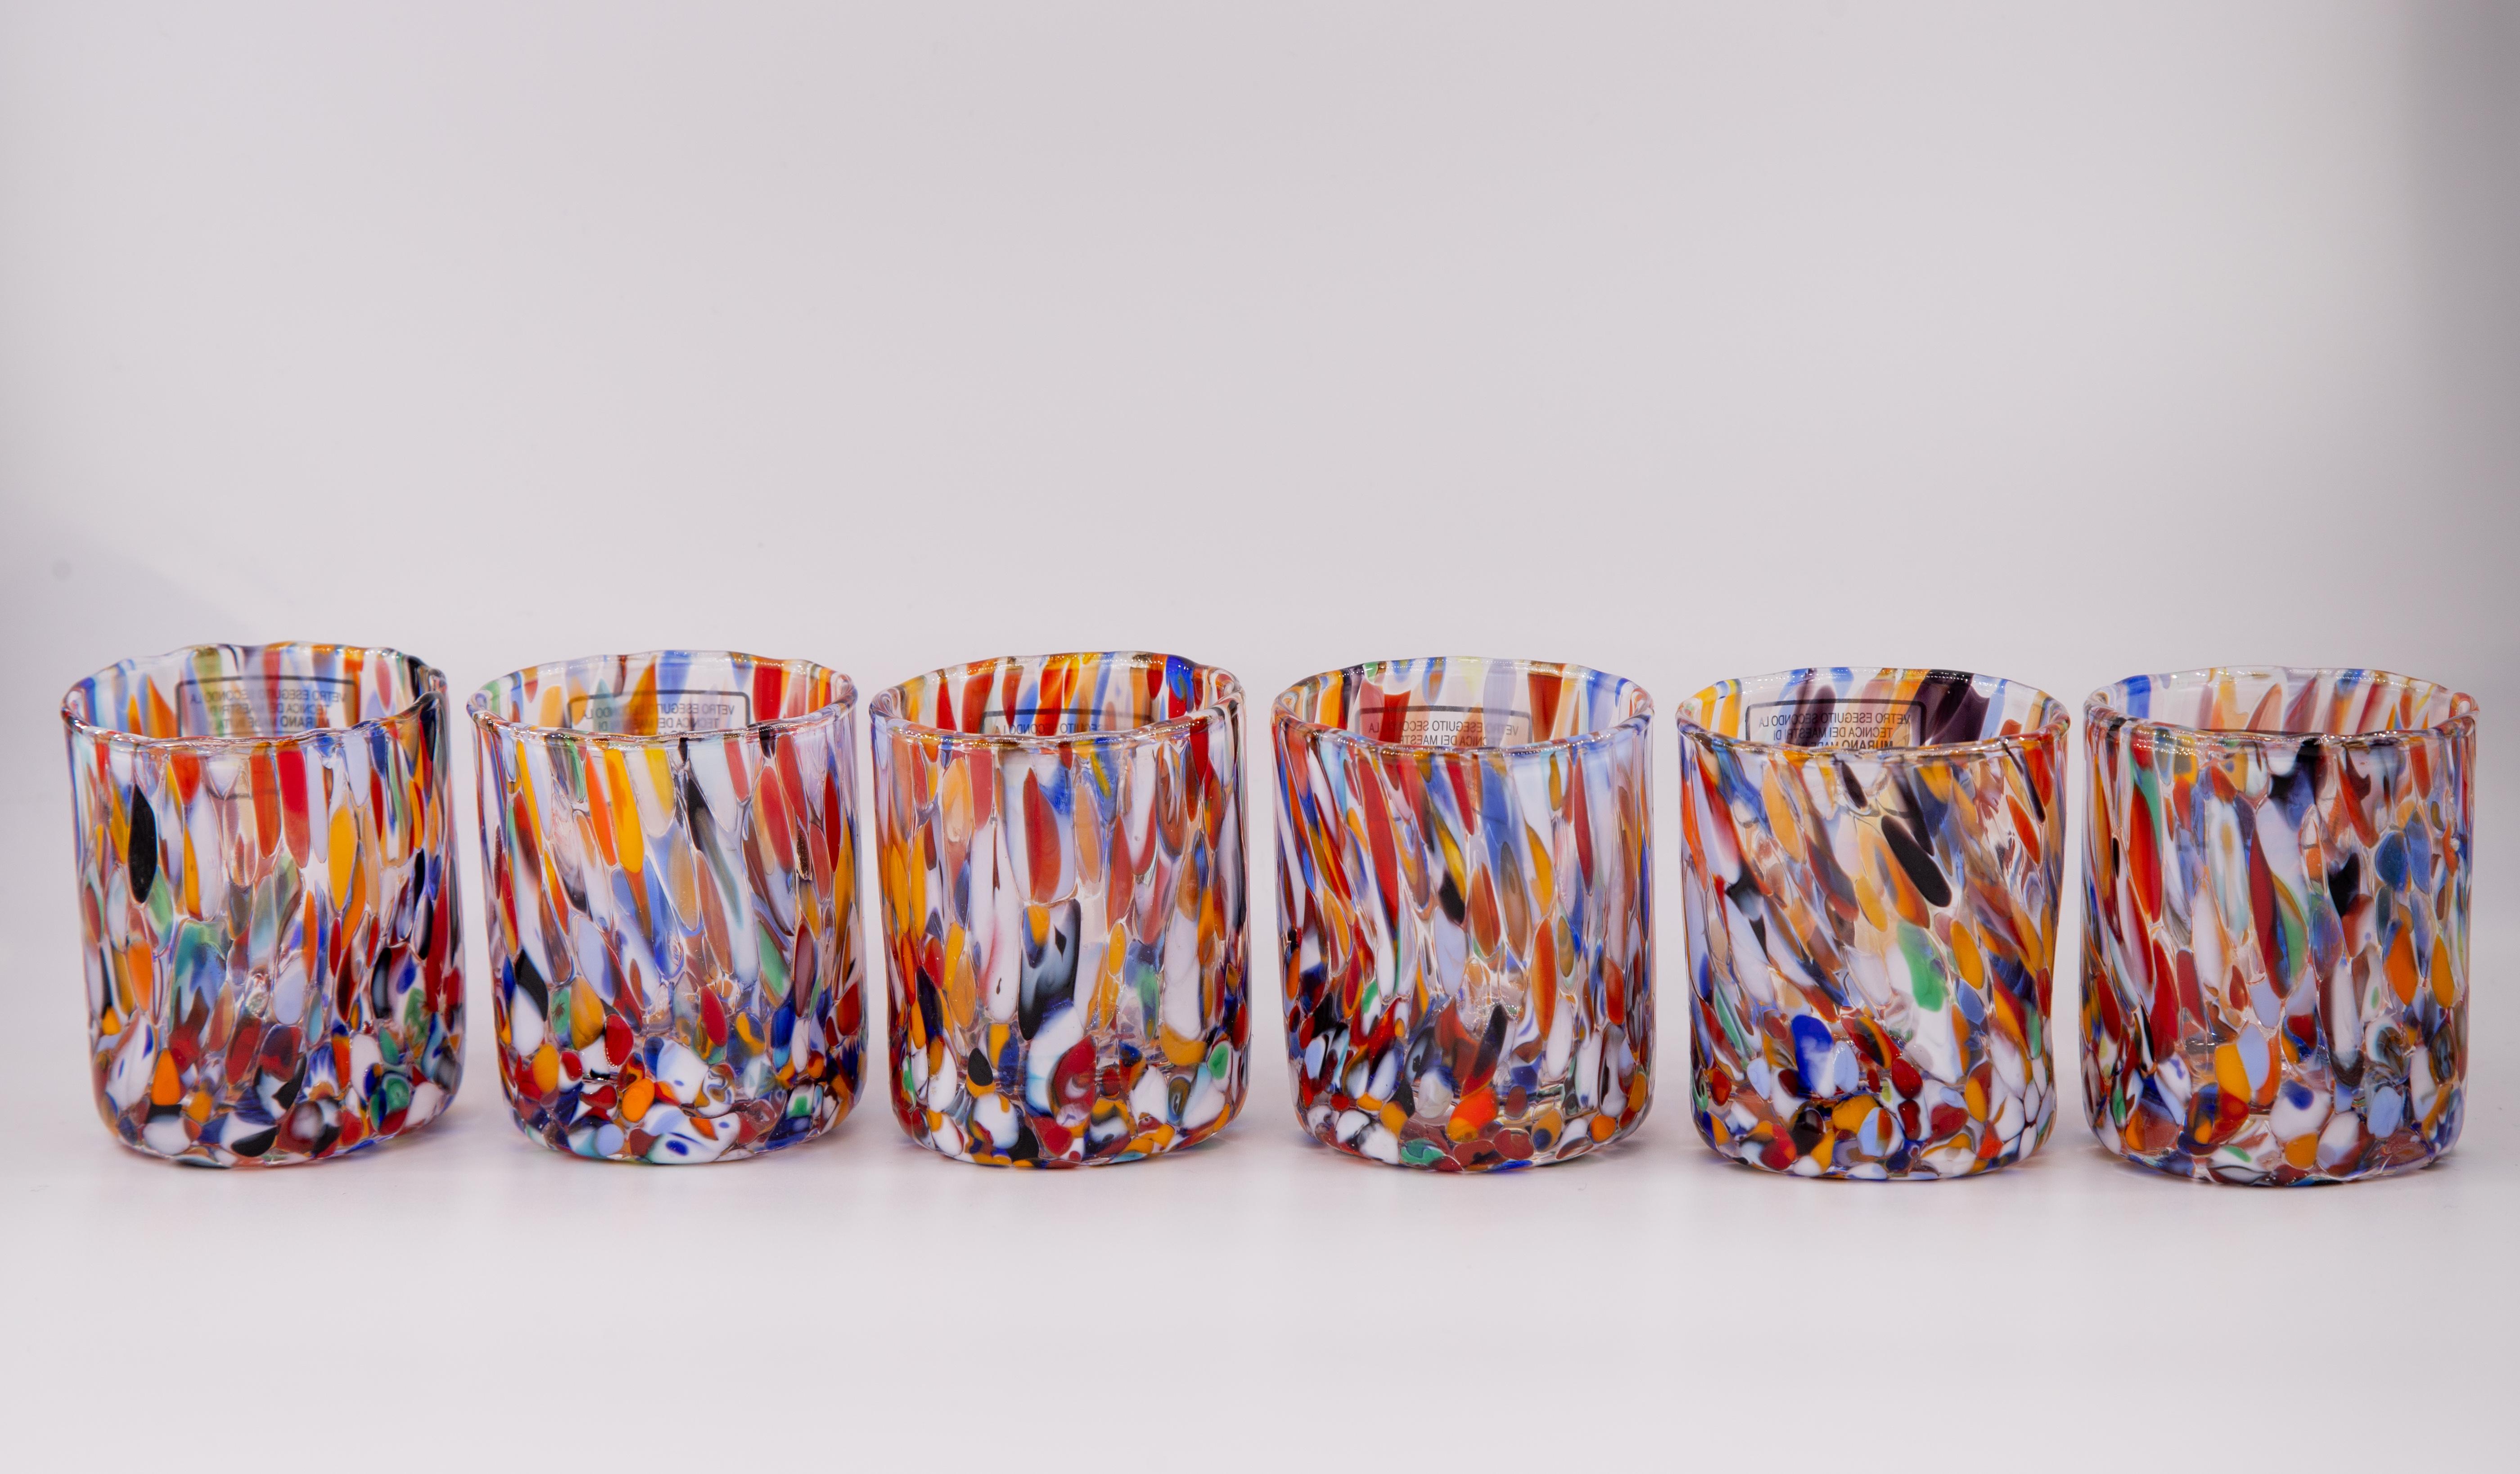 Satz von sechs Schnaps-/Kaffeegläsern Farbe Millefiori - Murano Glas - Made in Italy.

Diese individuellen Murano-Gläser sind vom klassischen 